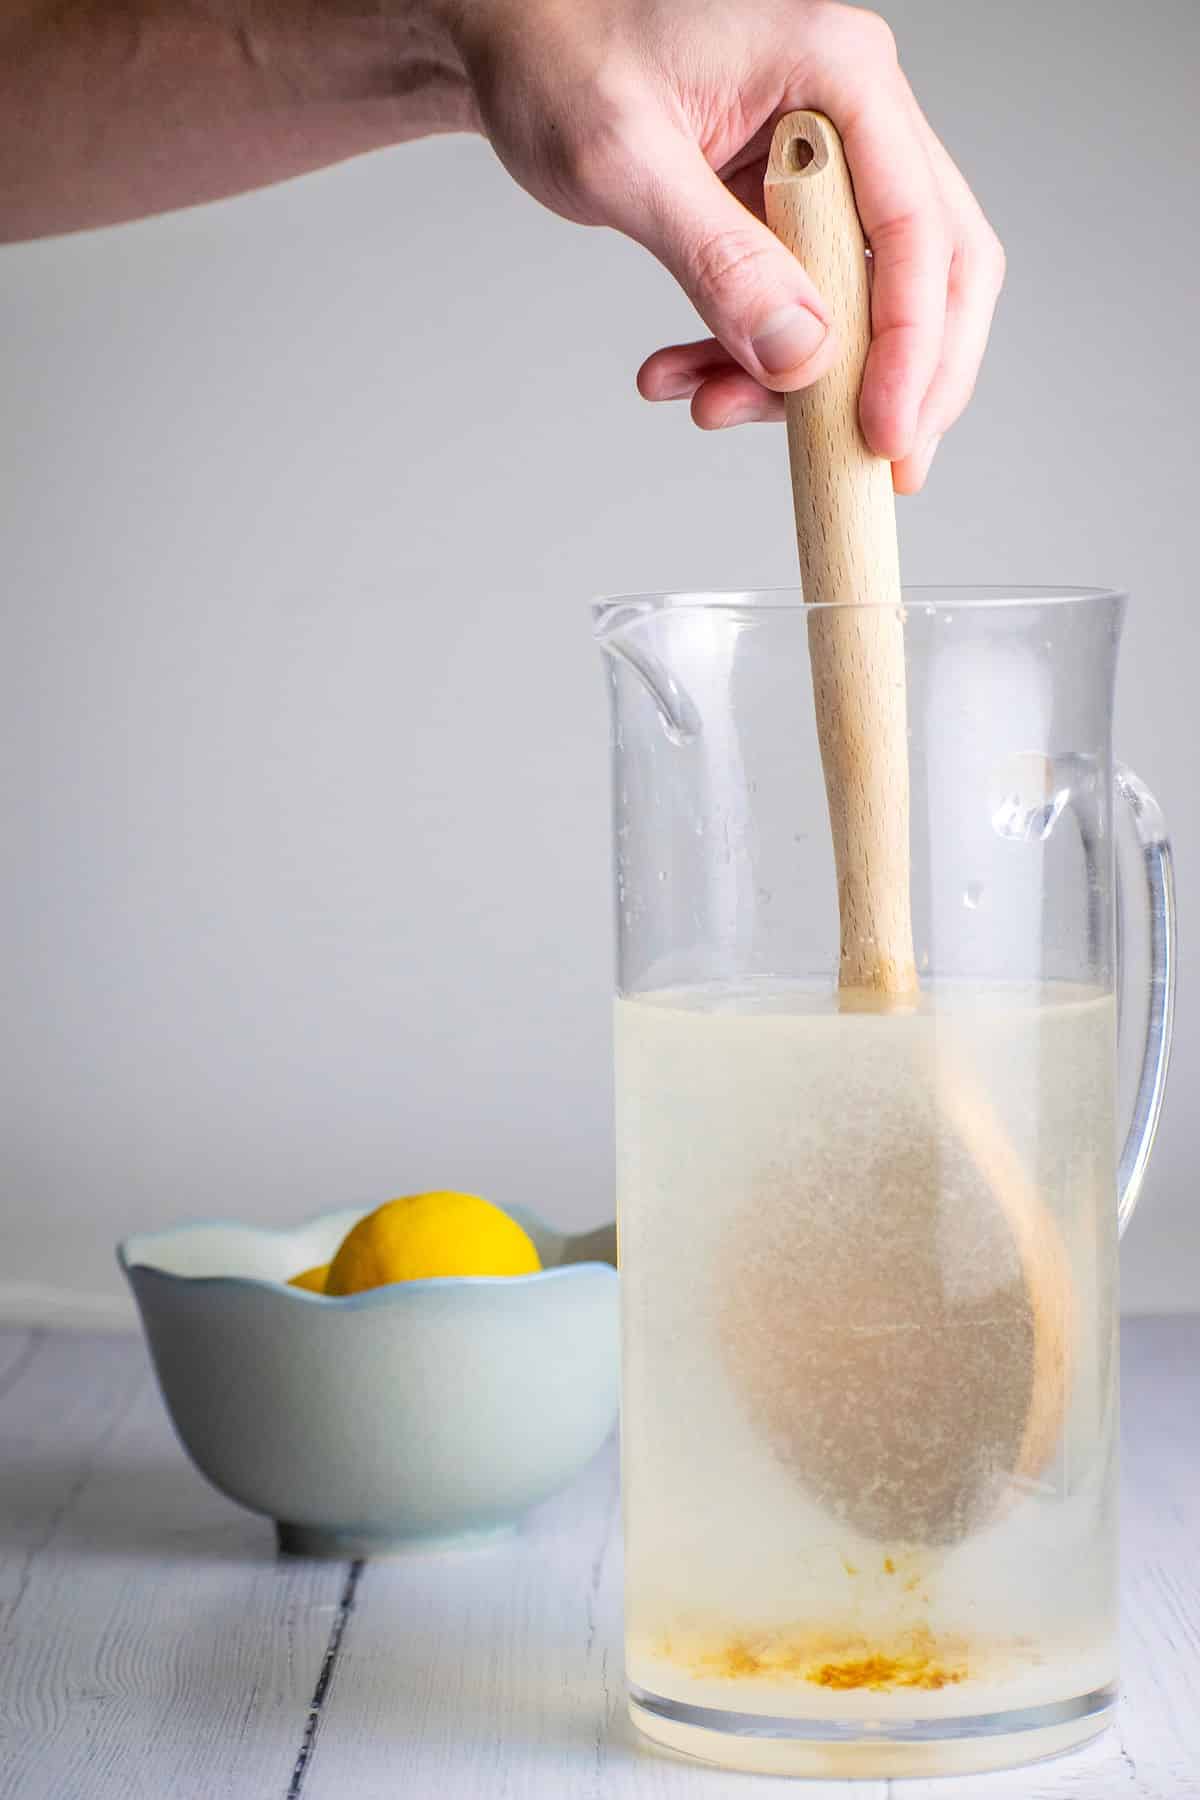 Wooden spoon mixing lemonade in pitcher.